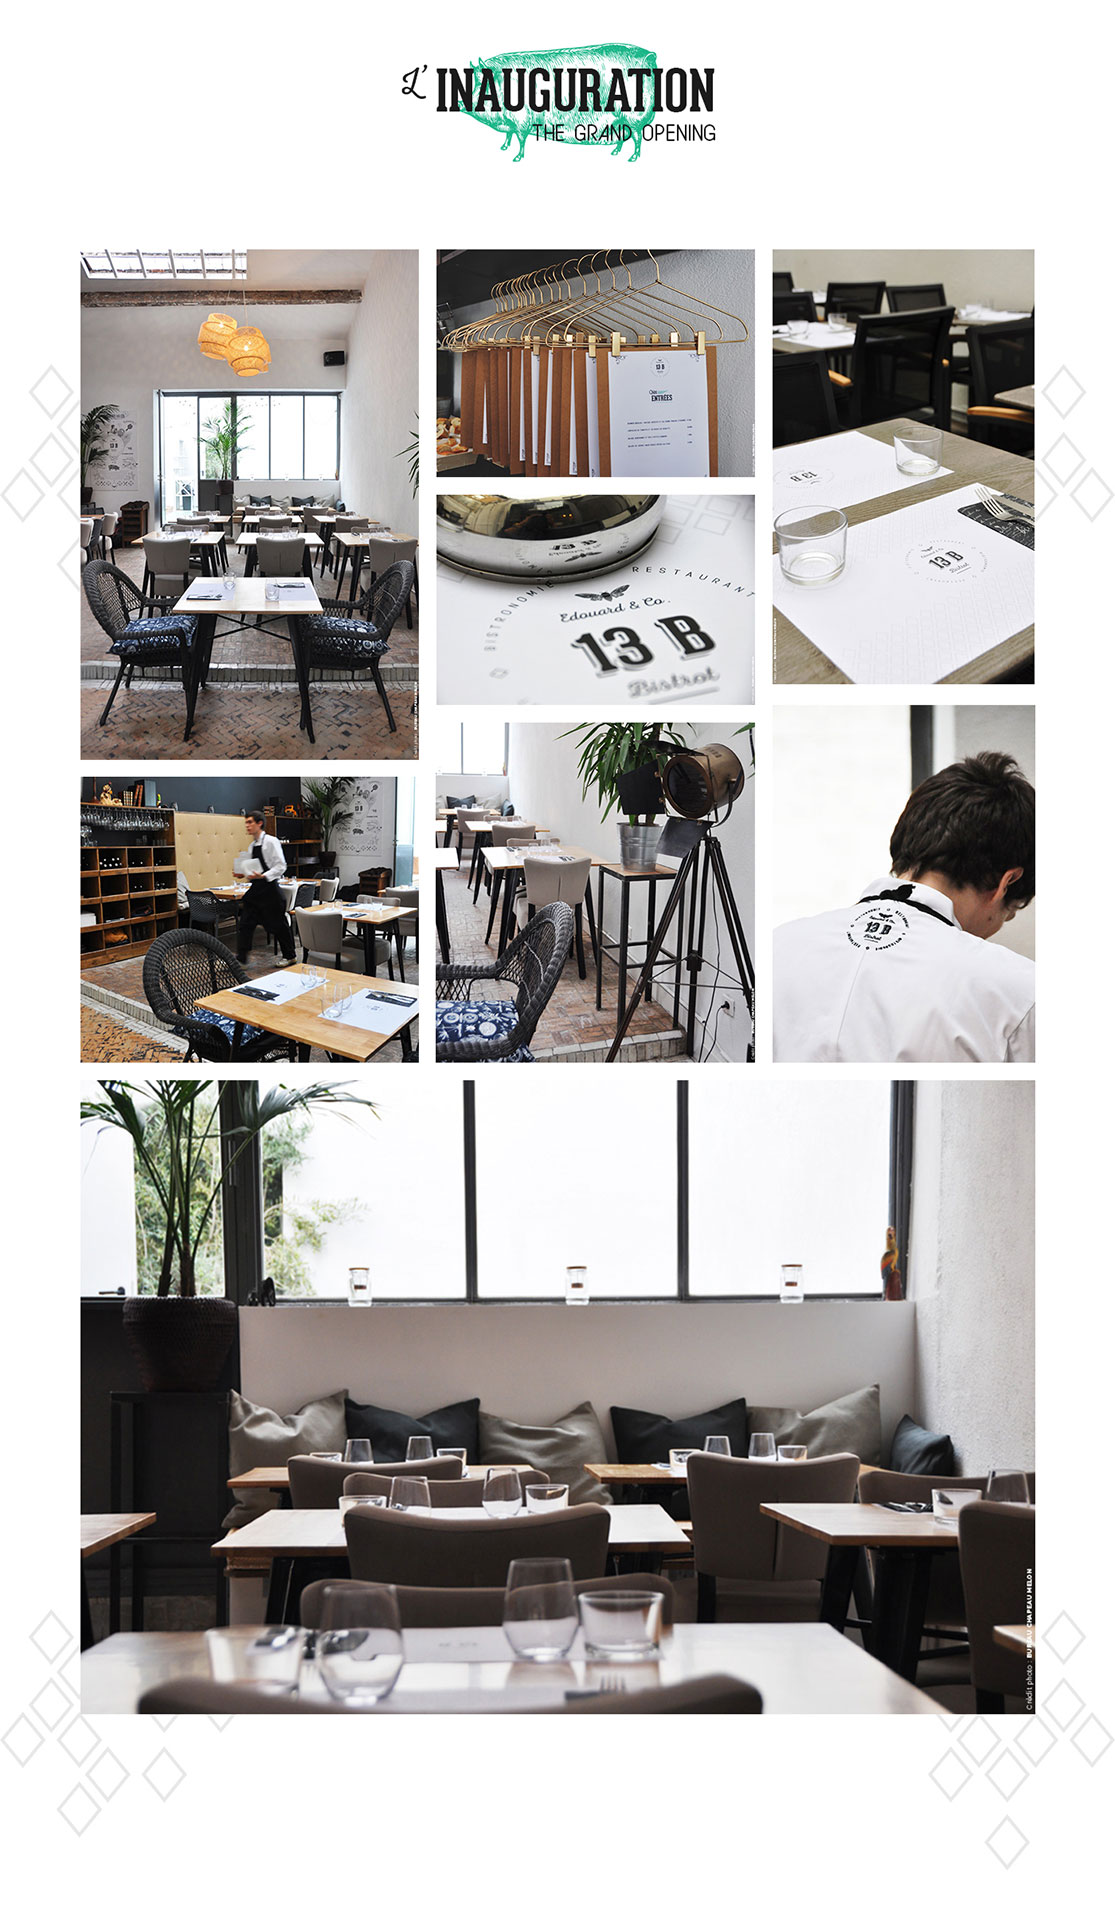 深圳餐饮空间设计公司、高端餐厅VI设计、高端VI设计、餐厅VI设计公司、视觉餐饮